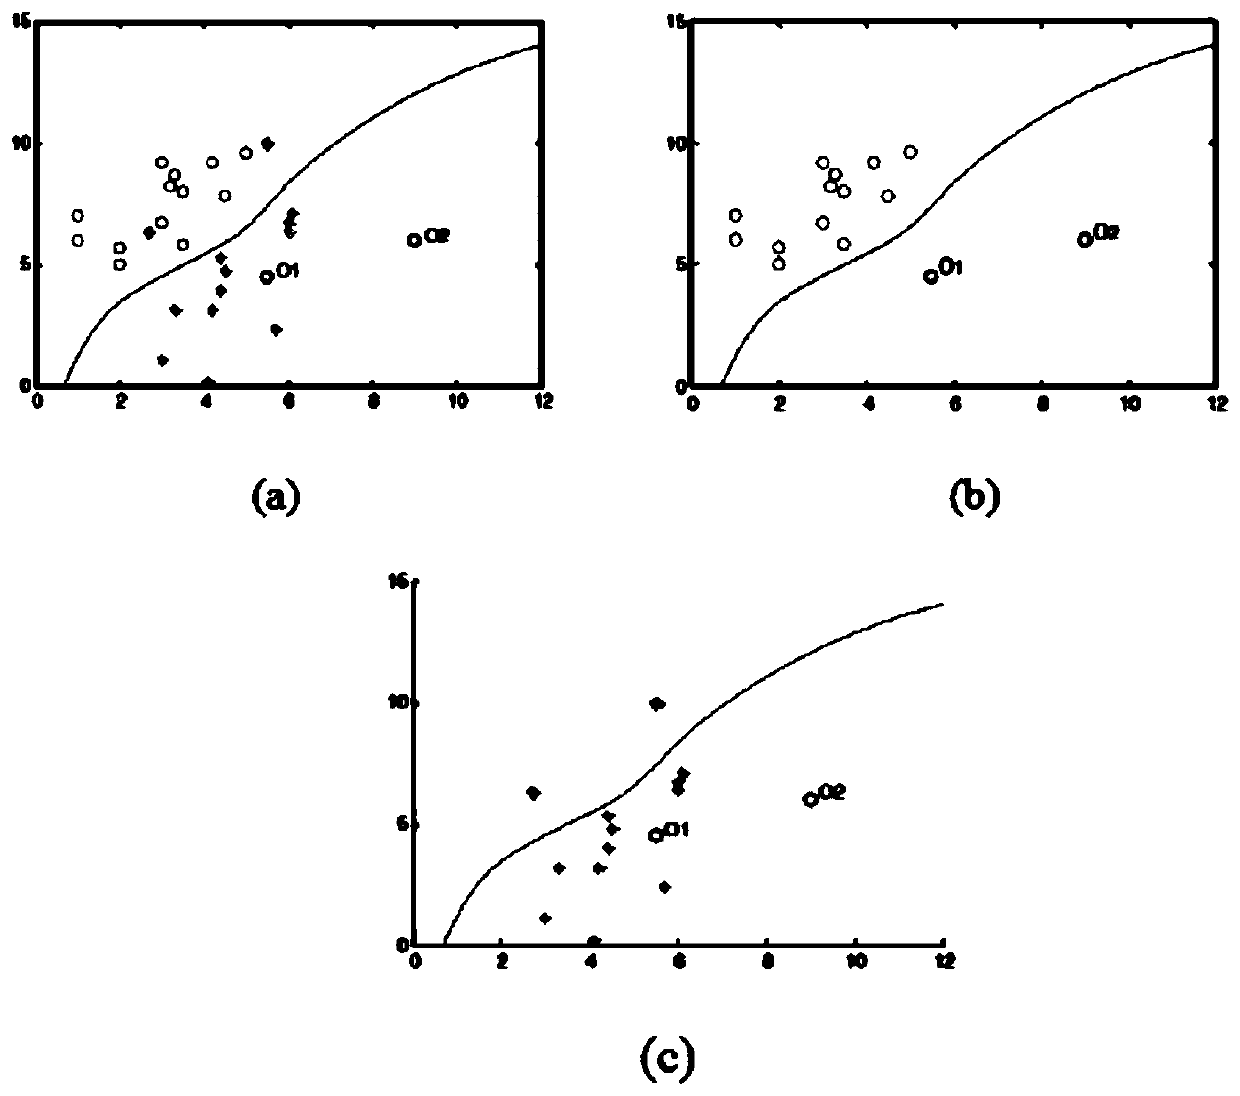 Label noise detection method based on multi-granularity relative density